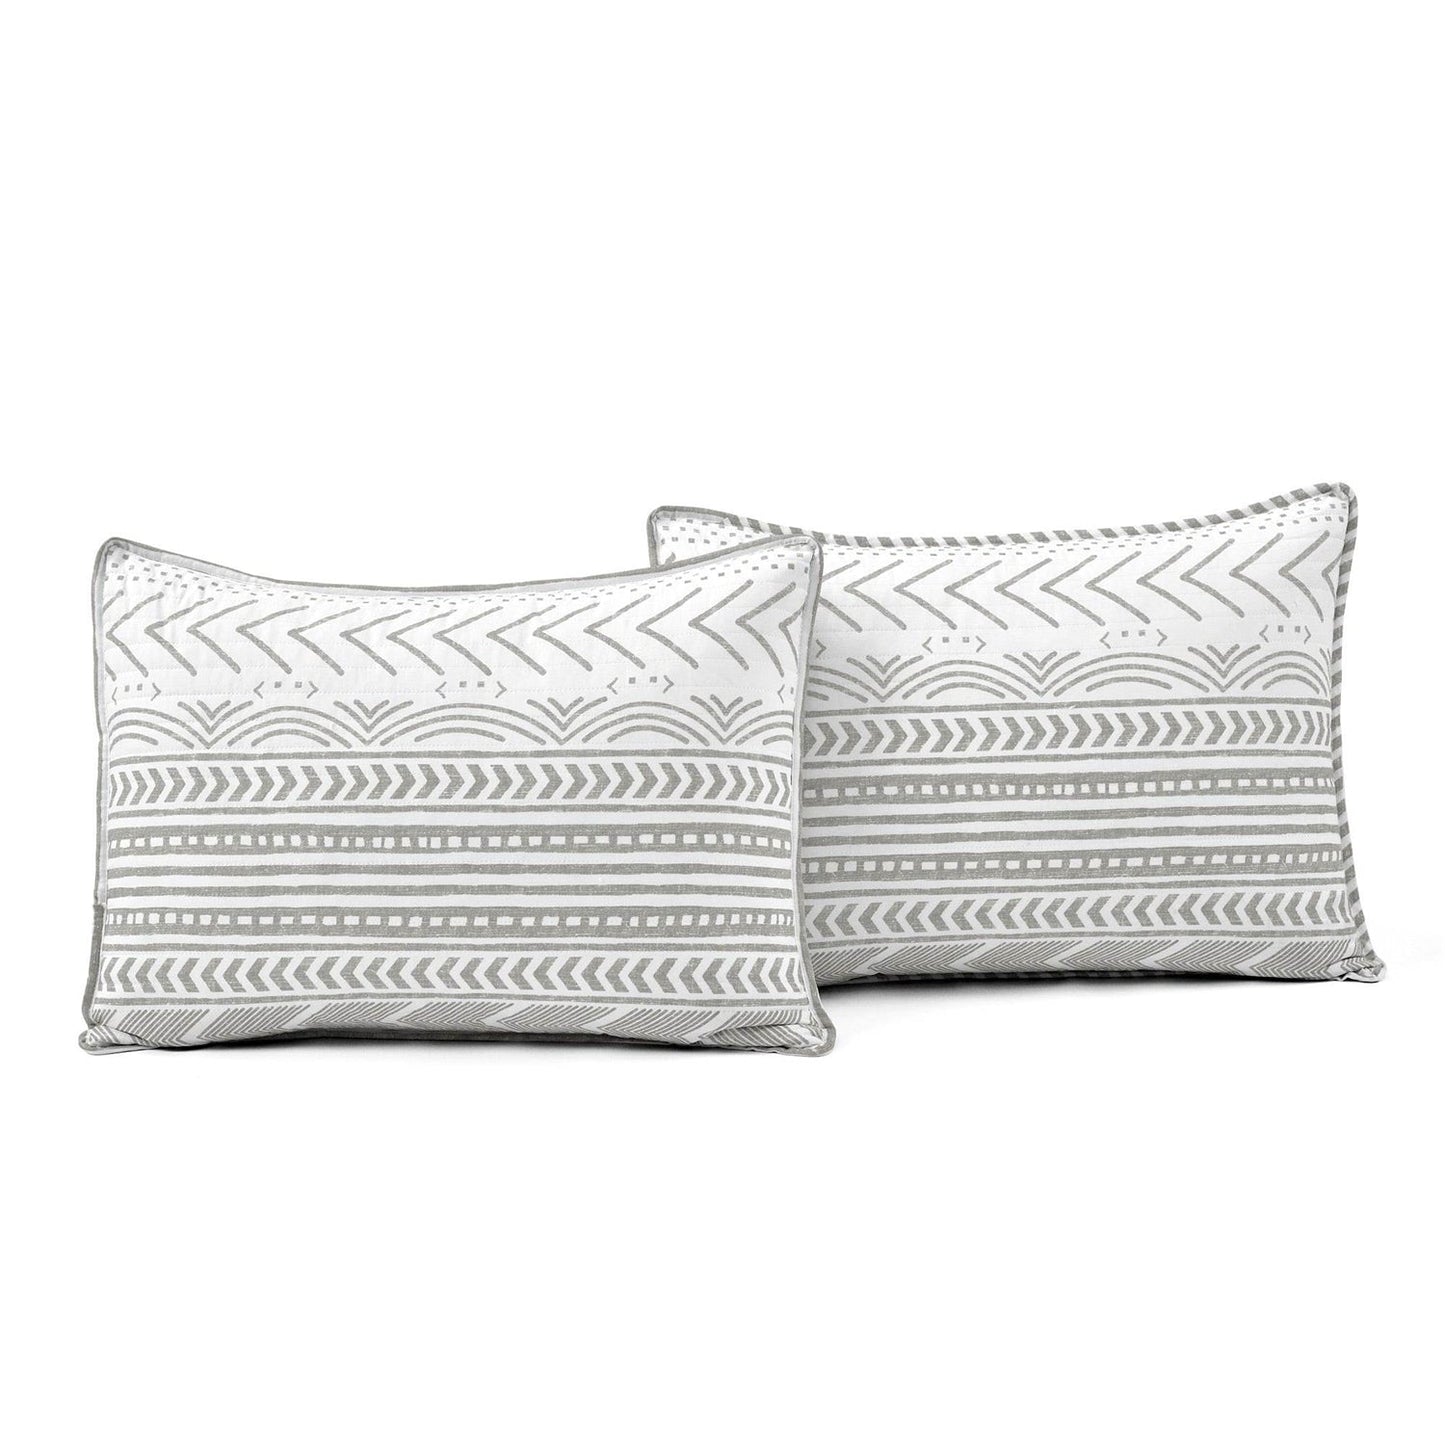 Bedroom > Quilts & Blankets - Full/Queen Scandinavian Chevron Grey White Reversible Cotton Quilt Set